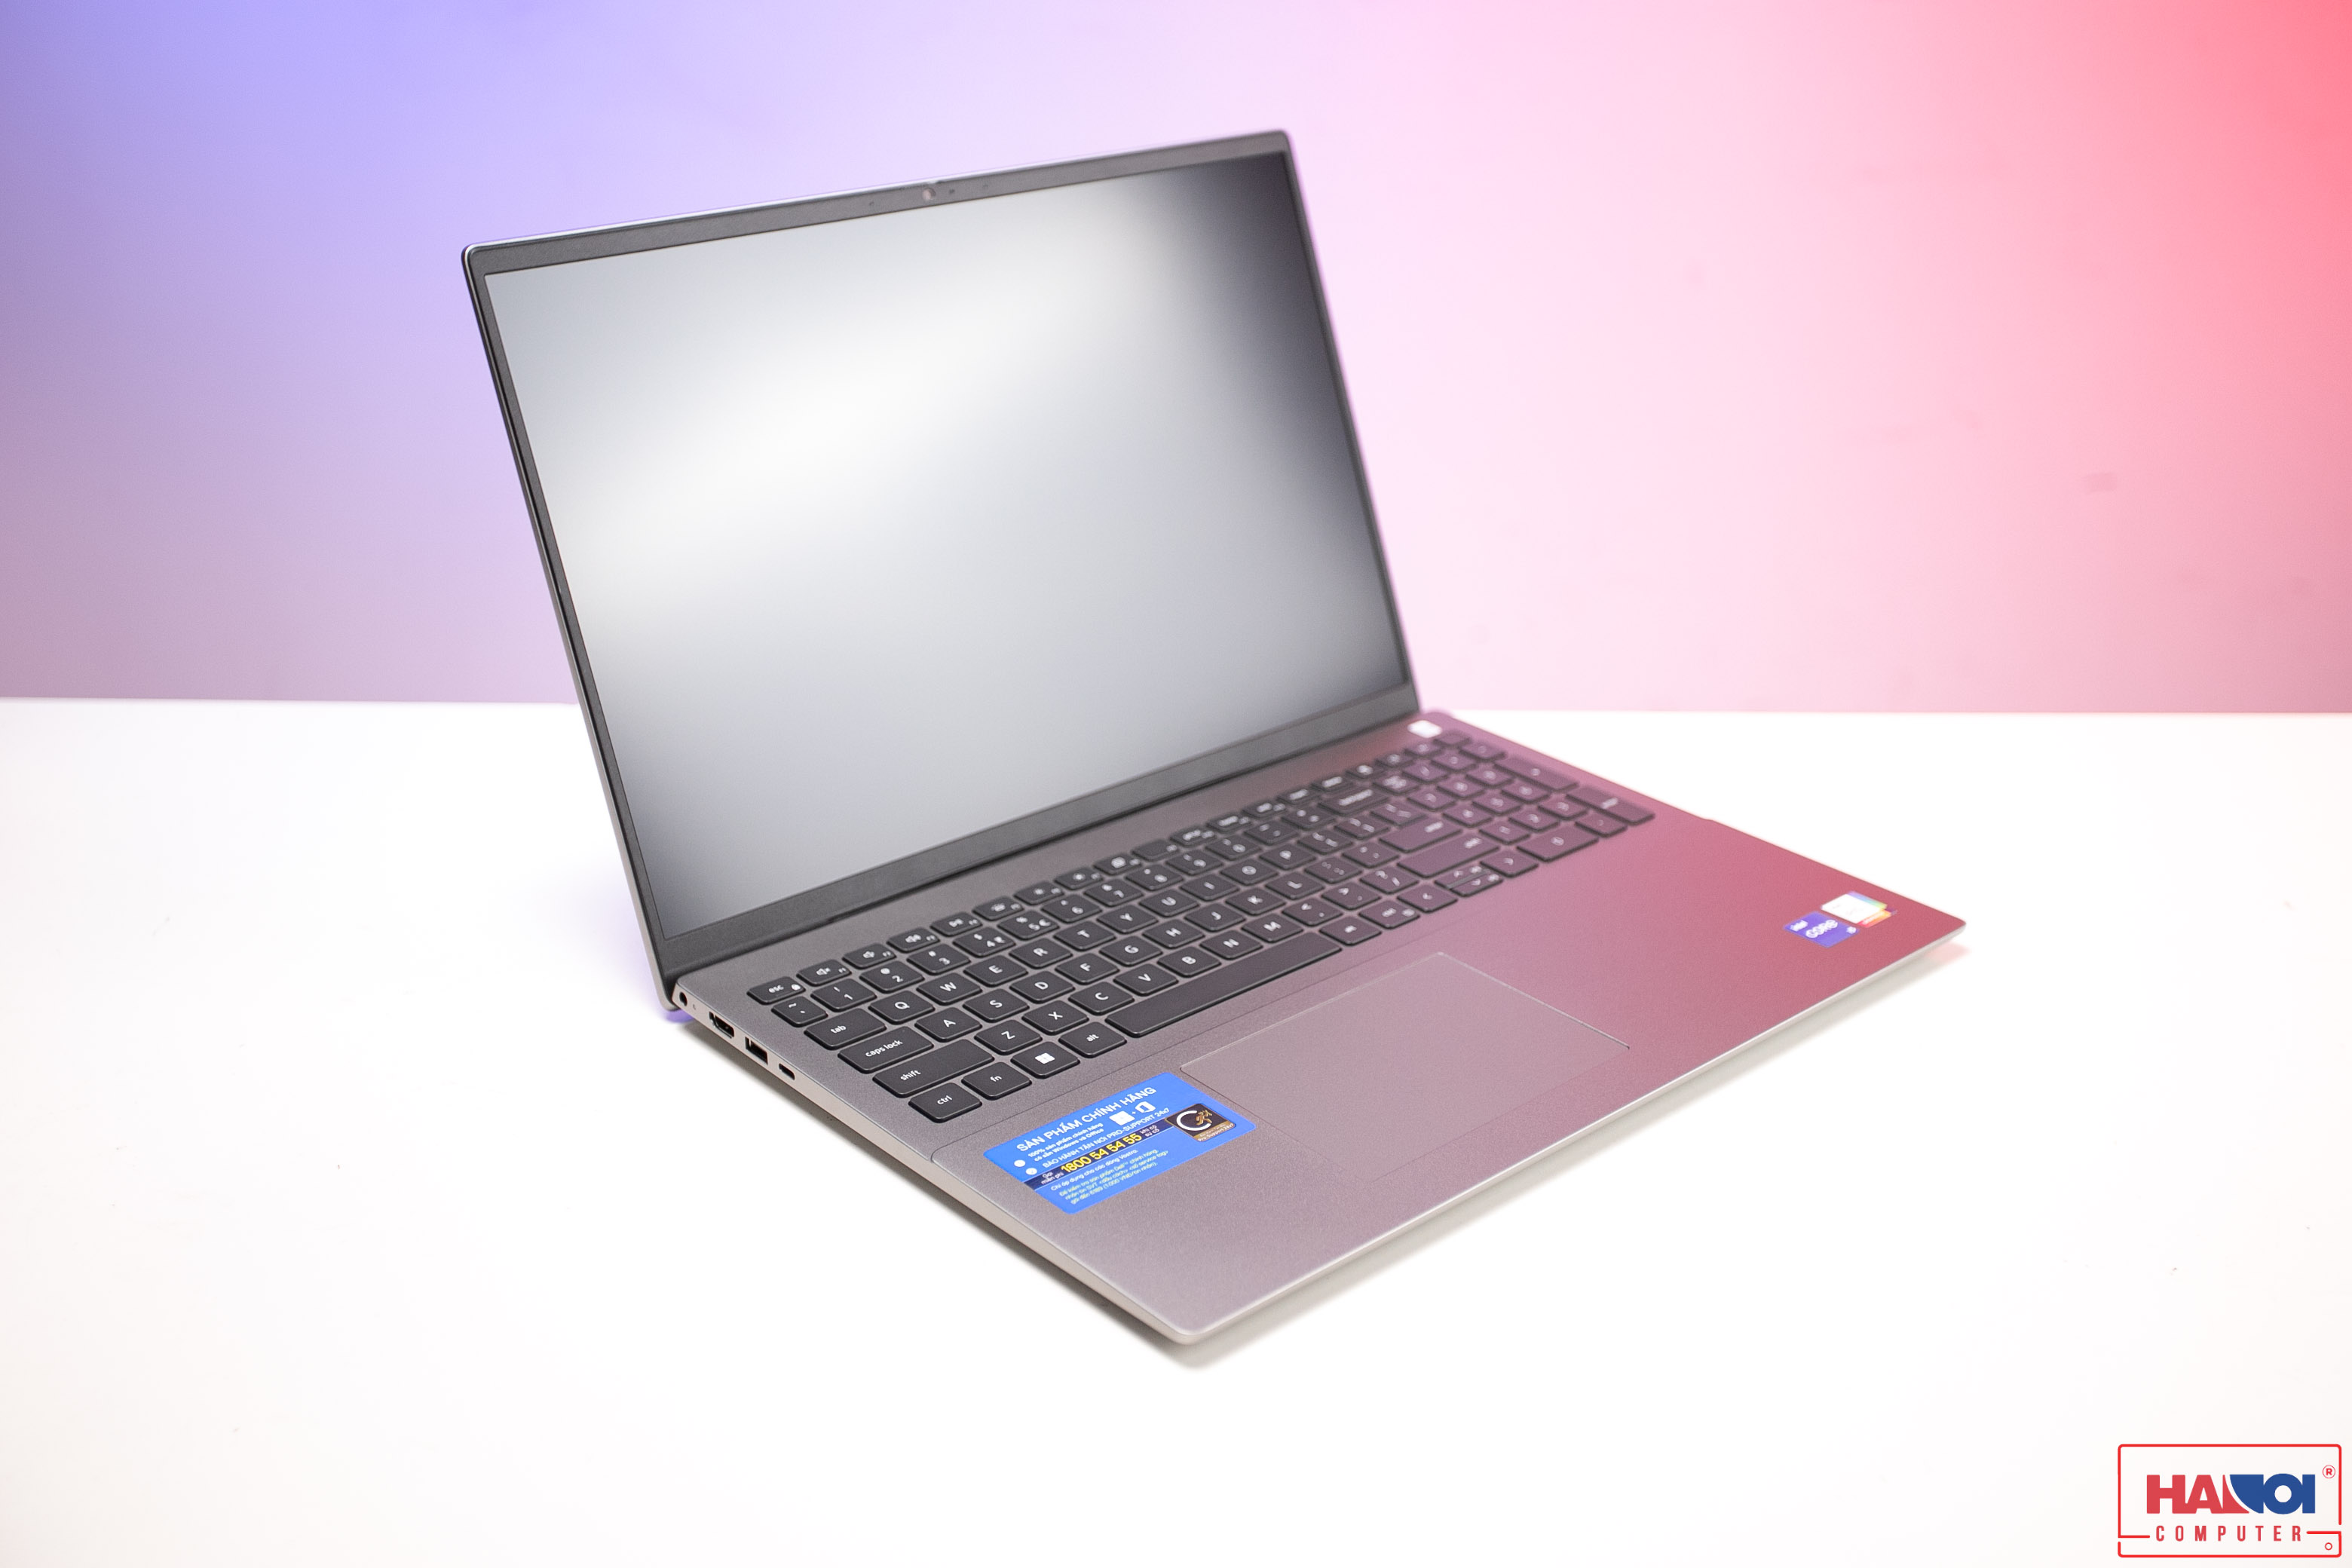 Đánh giá dòng laptop Dell Vostro ! Liệu có nên mua?